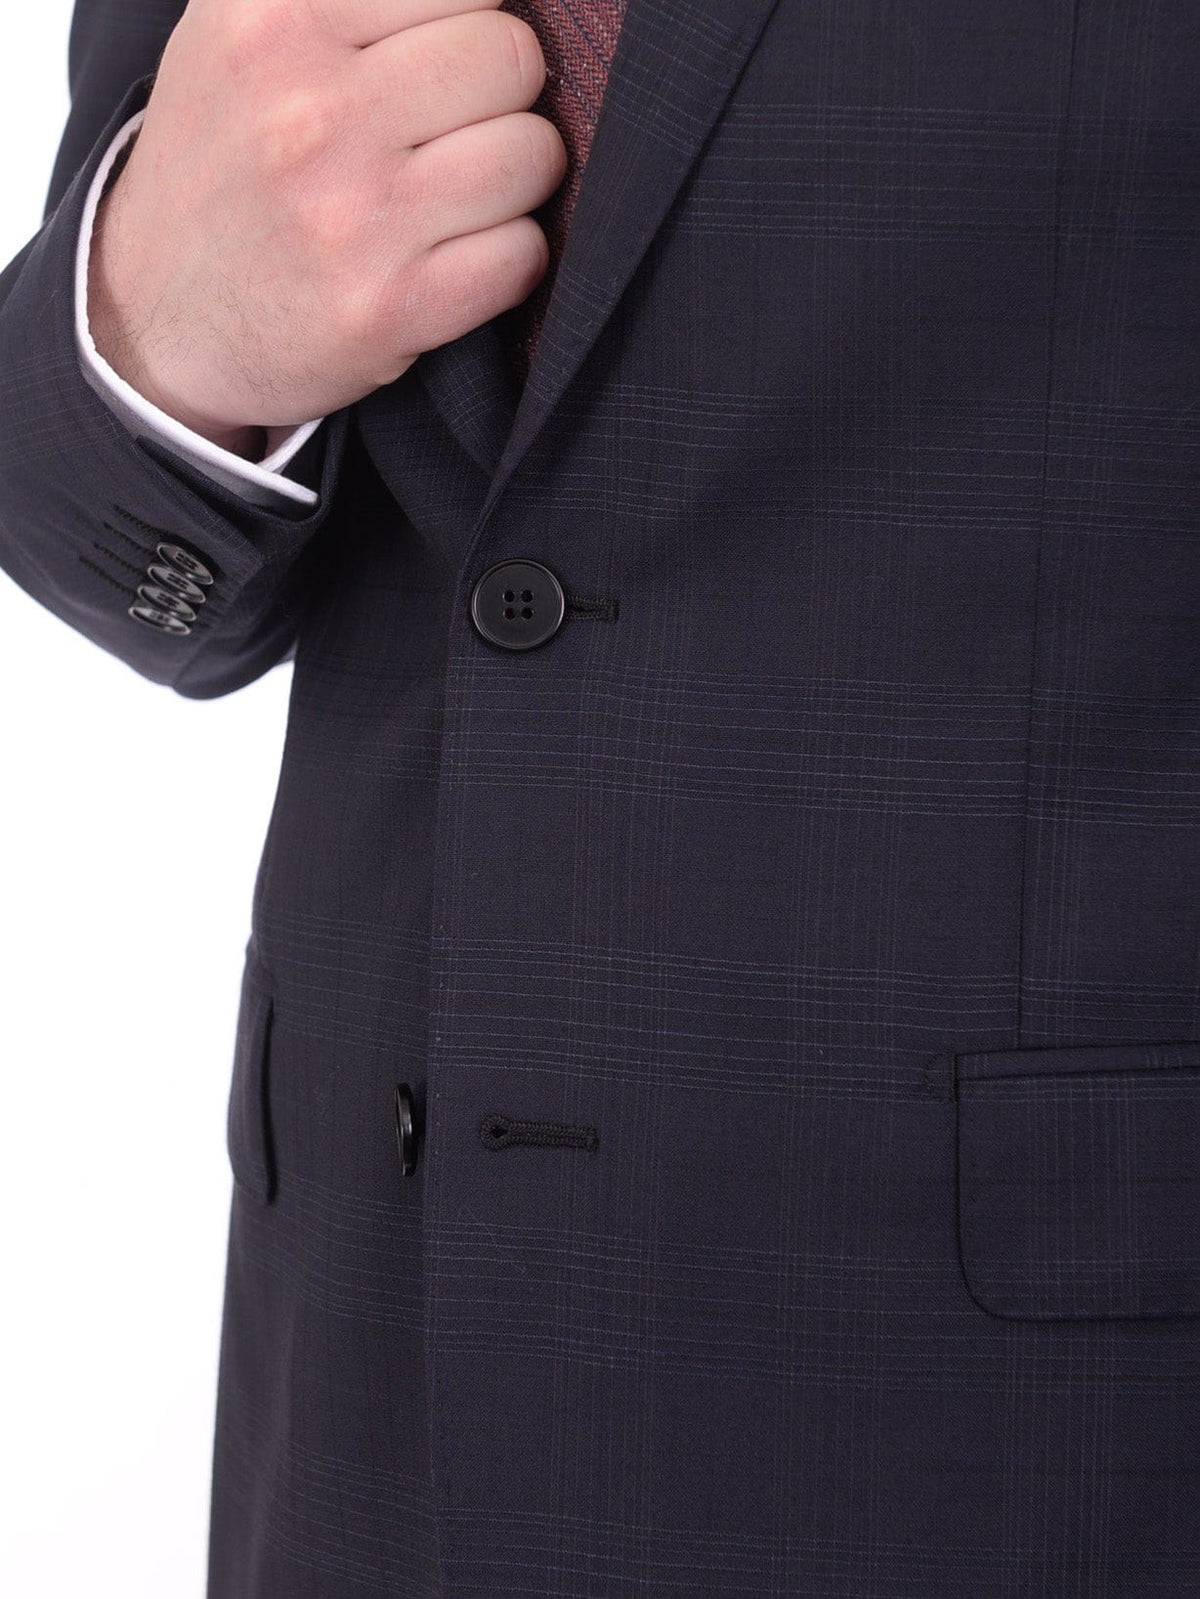 Napoli TWO PIECE SUITS Men&#39;s Napoli Slim Fit Blue Plaid Half Canvassed 2 Button Super 150s Wool Suit